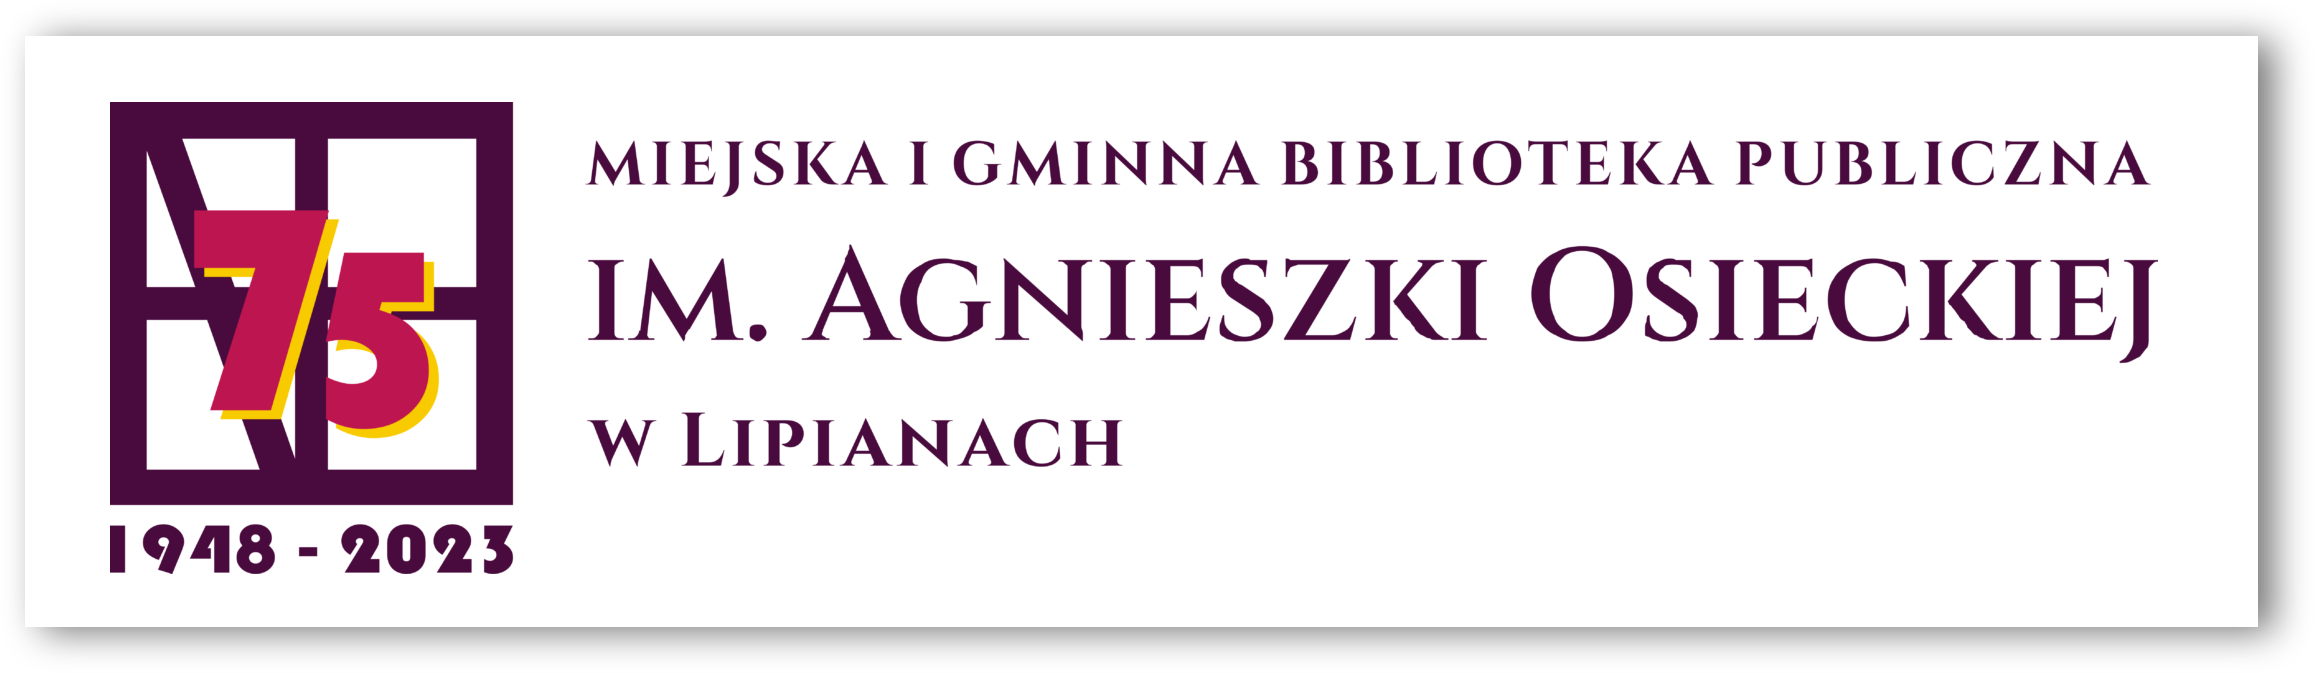 Miejska i Gminna Biblioteka Publiczna im. Agnieszki Osieckiej w Lipianach